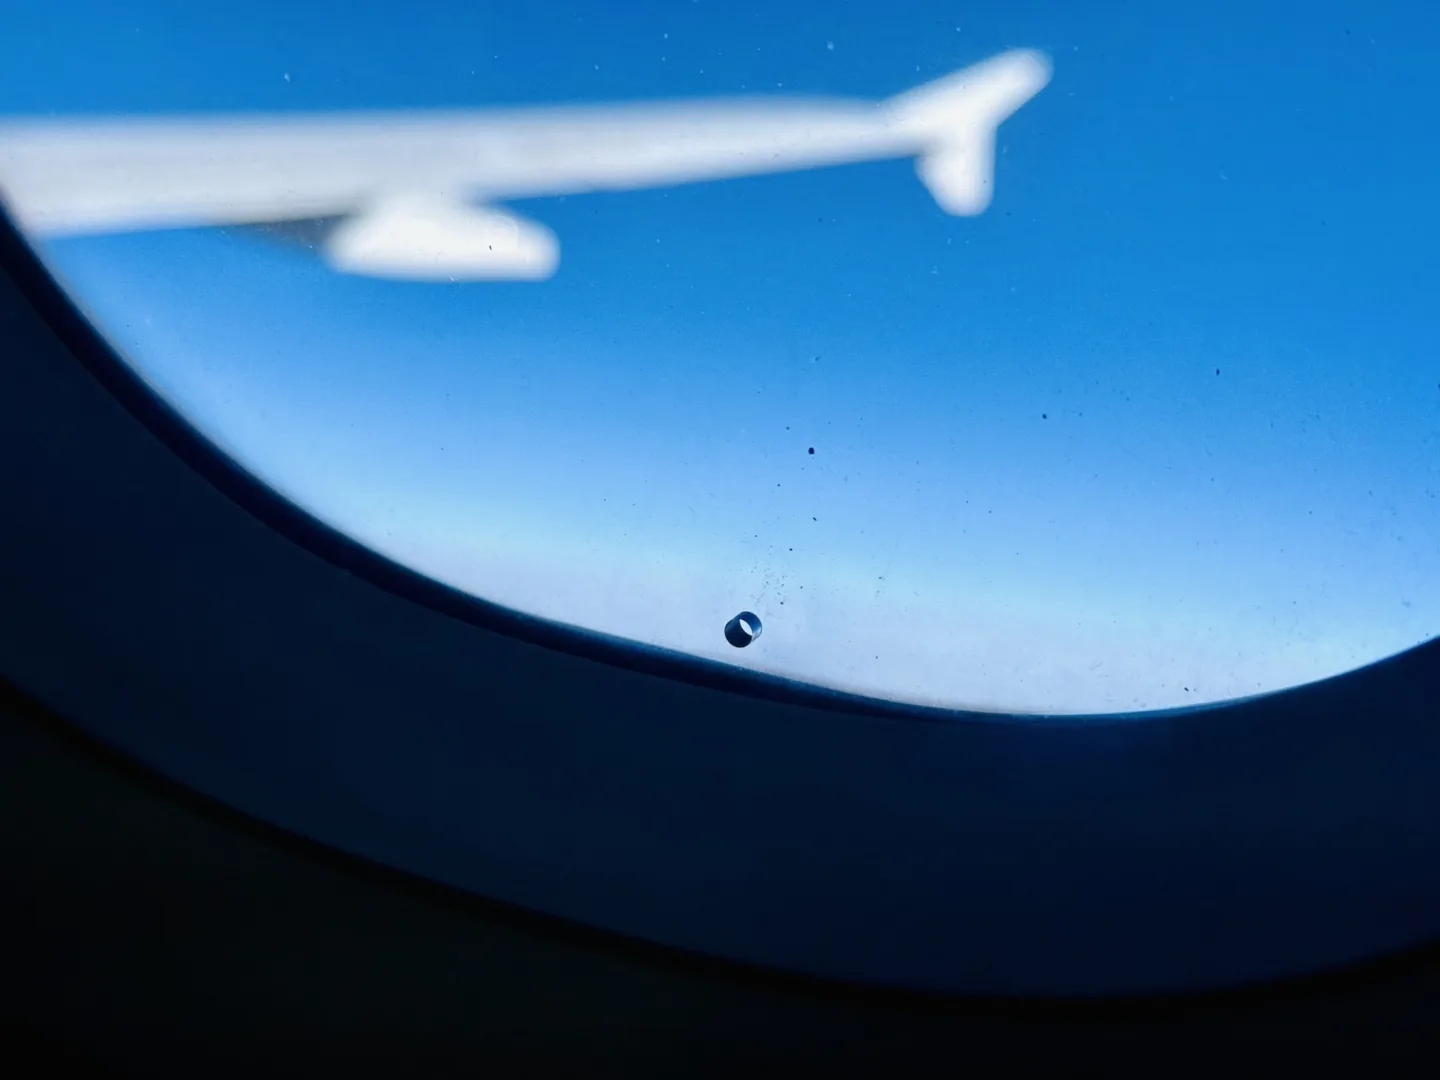 Po co jest dziura w oknie samolotu? Fot. materiał własny.